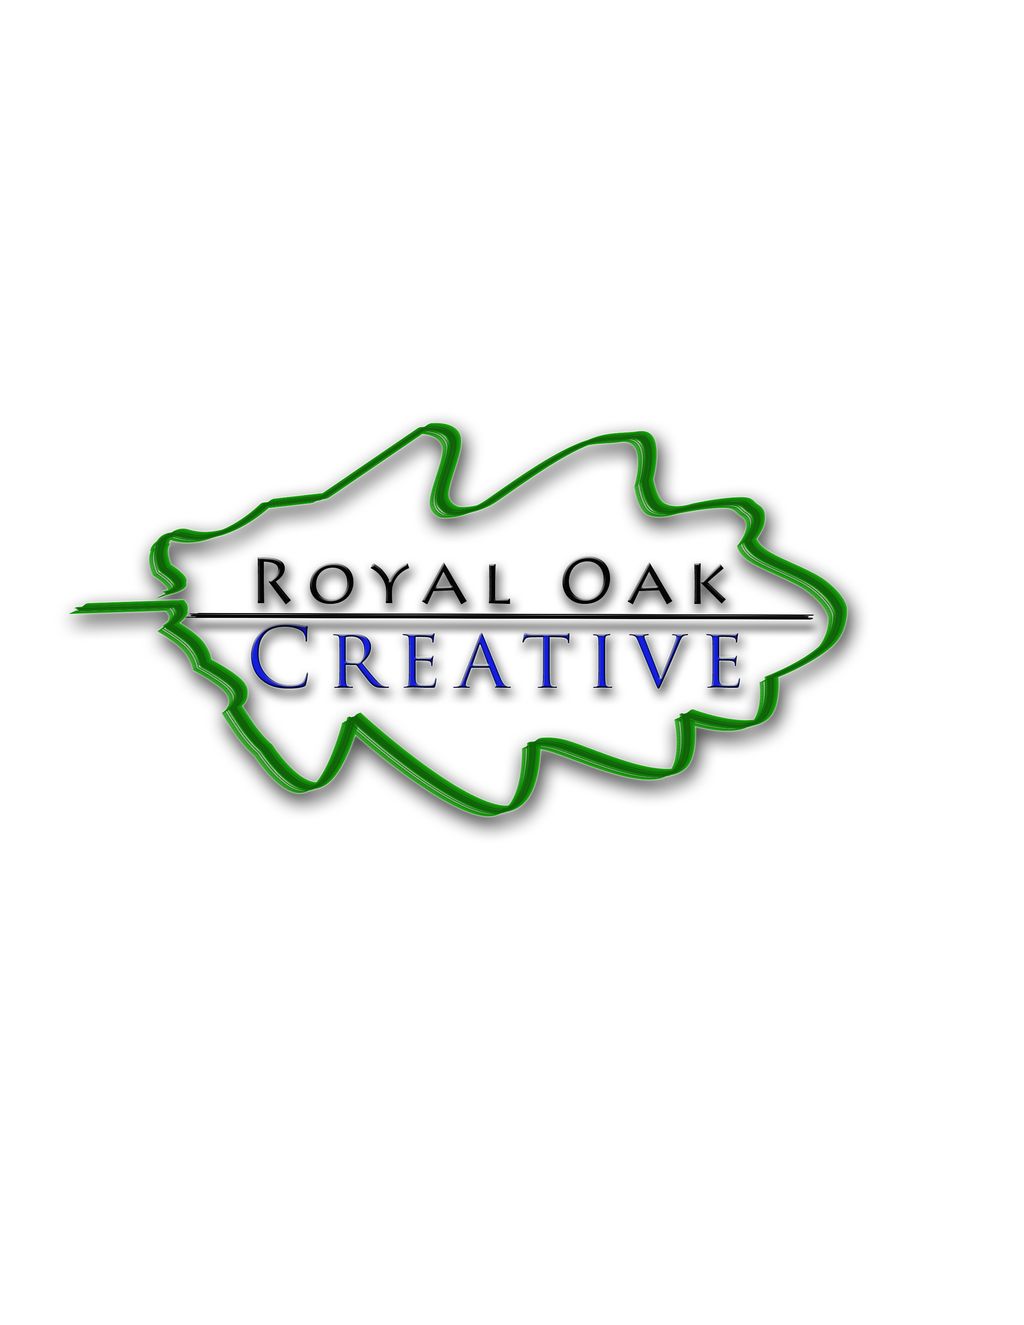 Royal Oak Creative